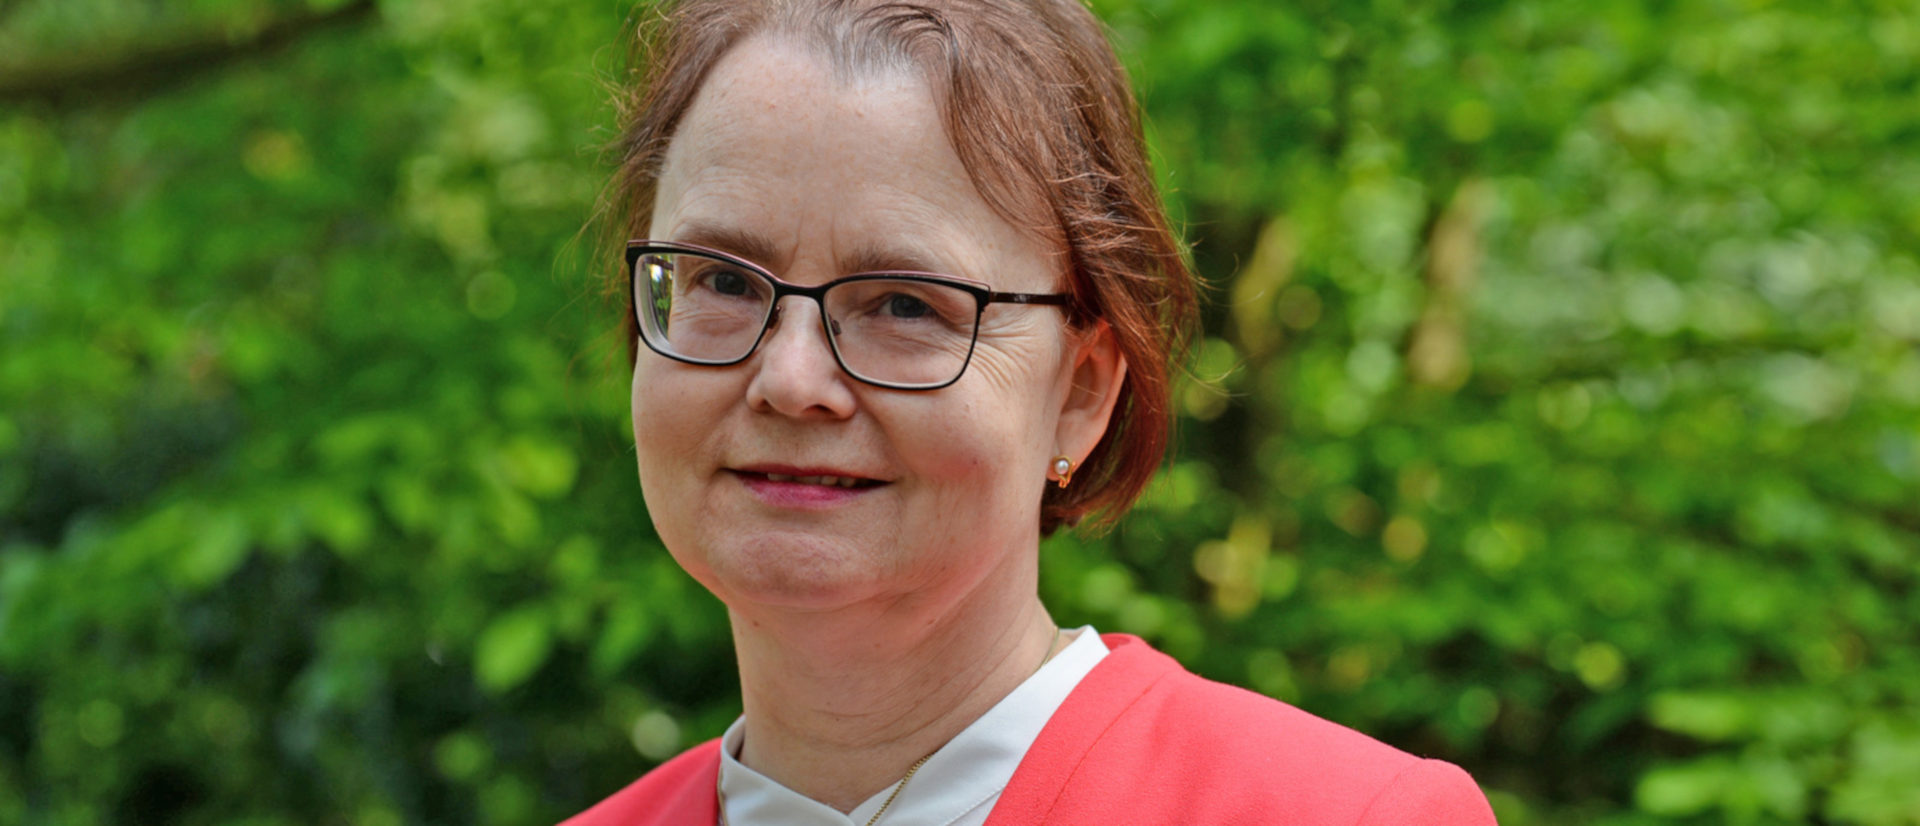 Margit Eckholt, Professorin für Dogmatik und Fundamentaltheologie, Universität Osnabrück